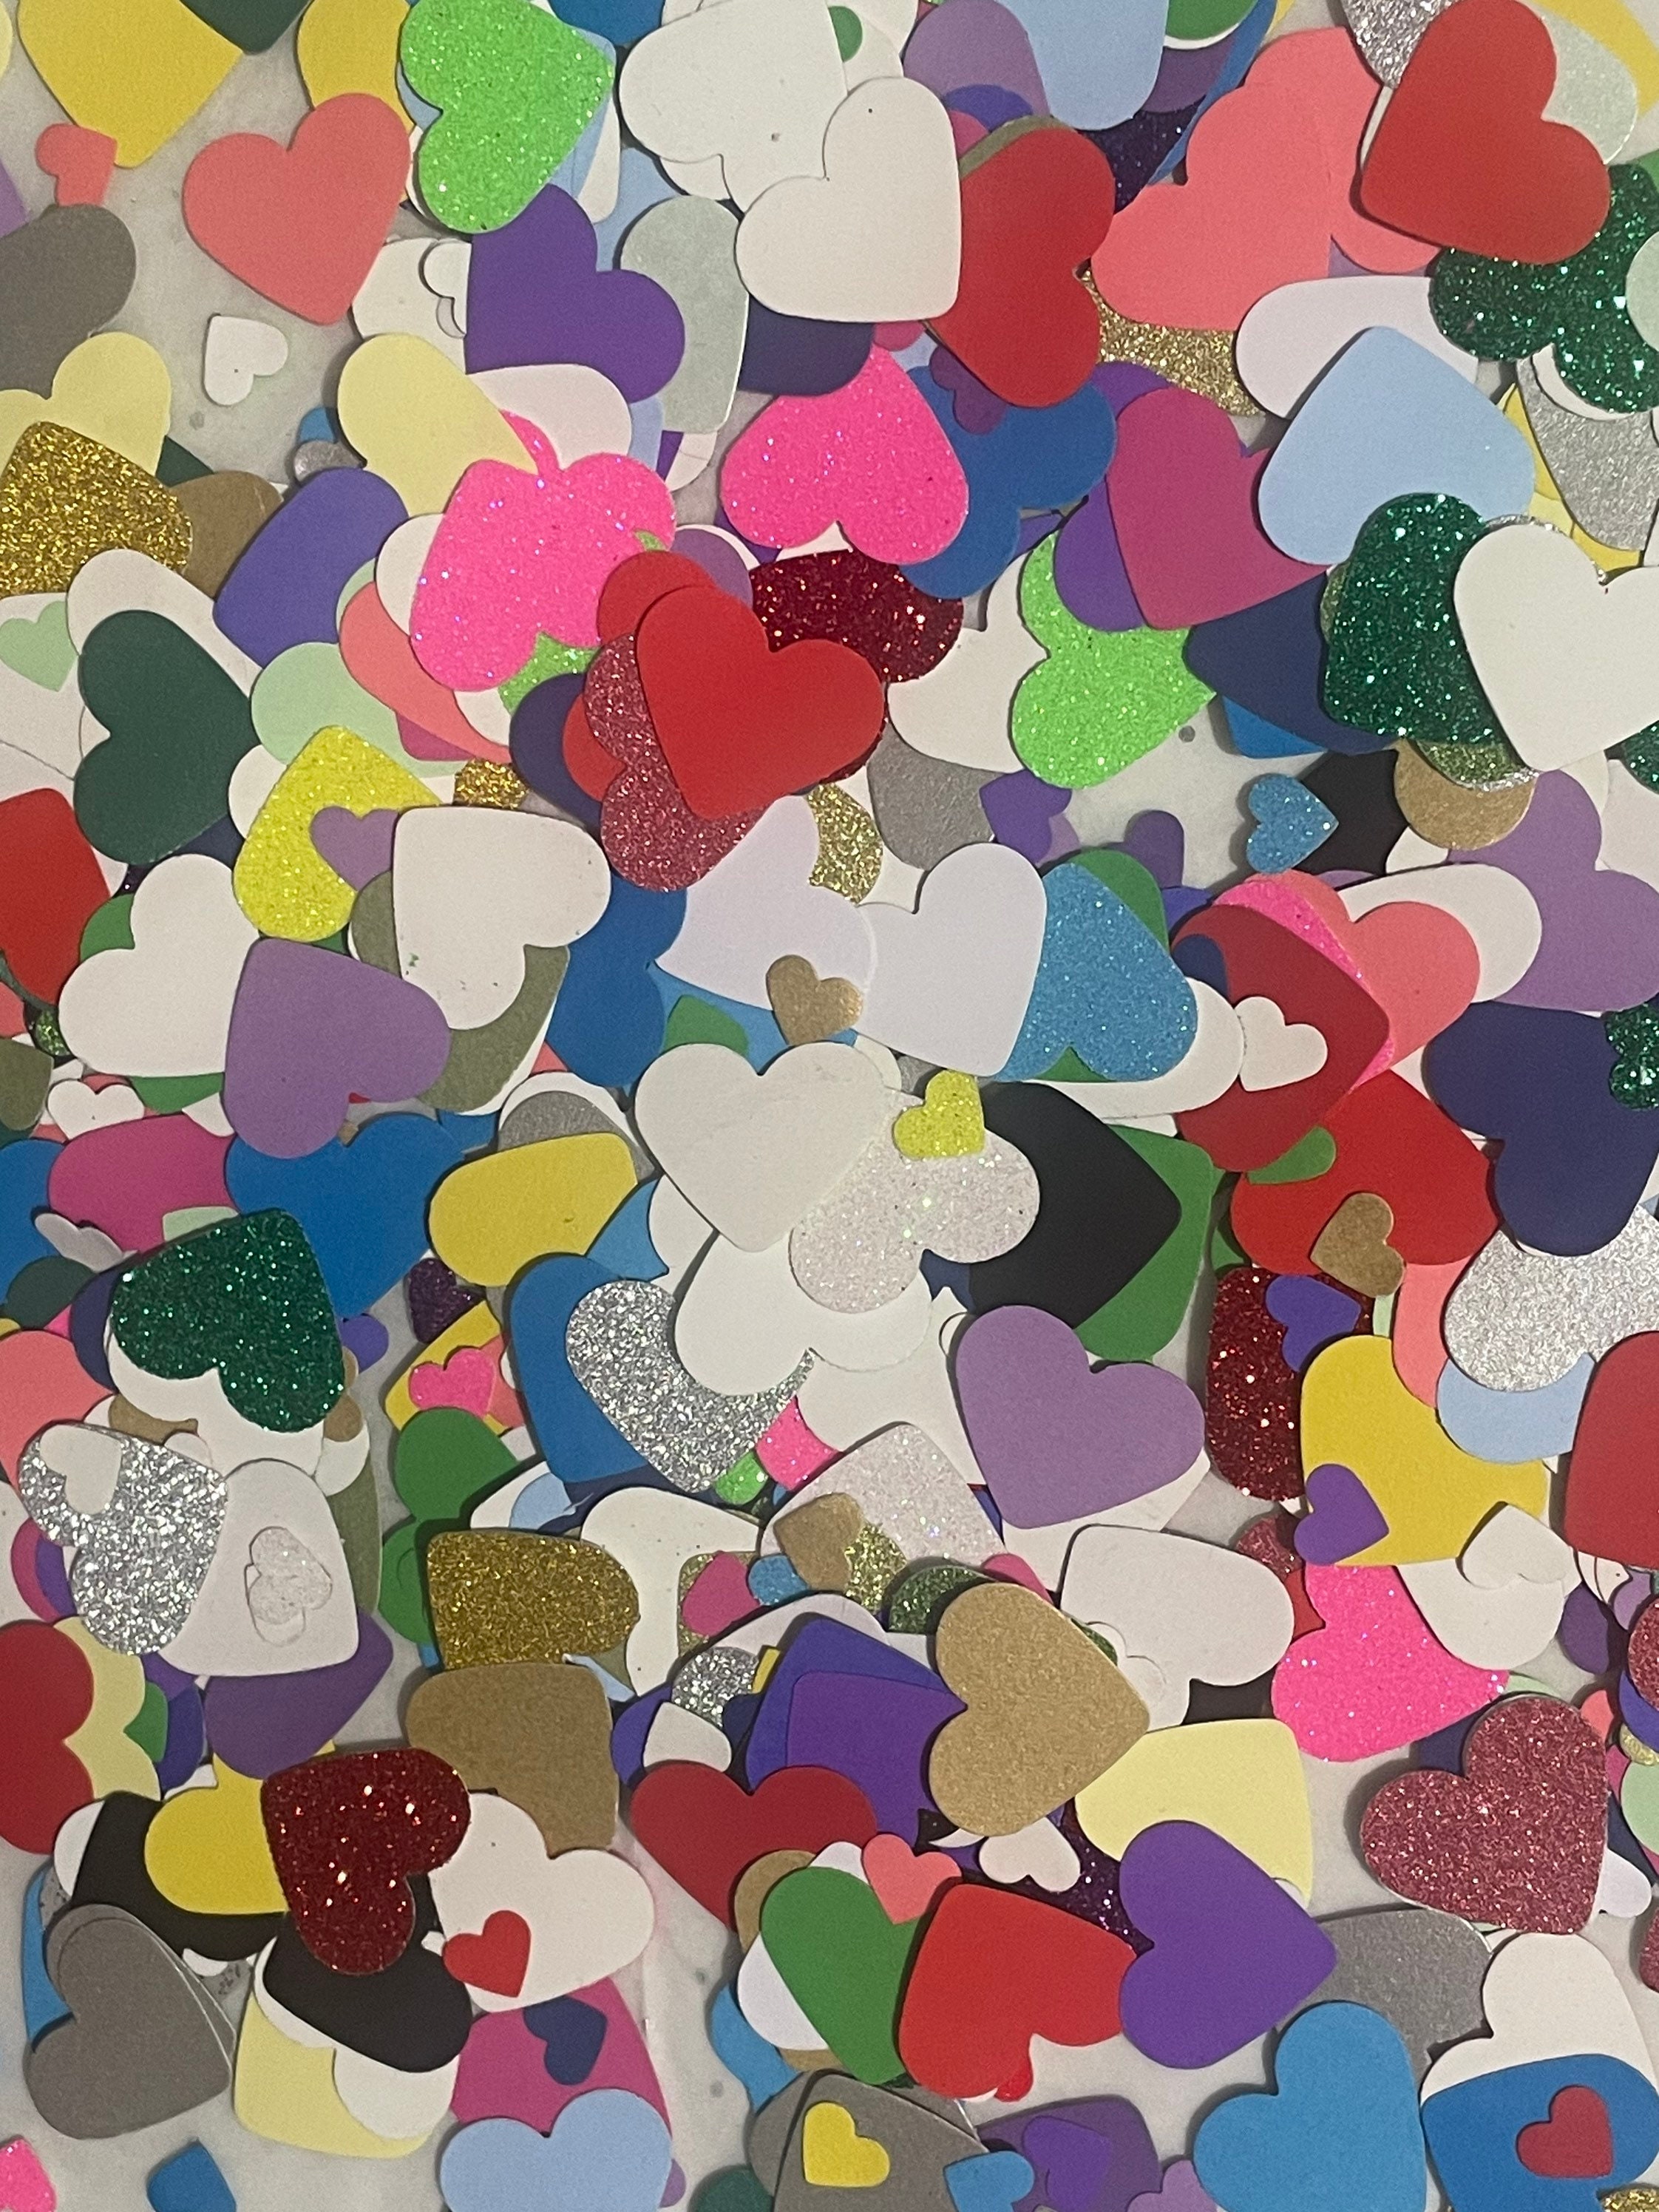 Heart Confetti Mix - US